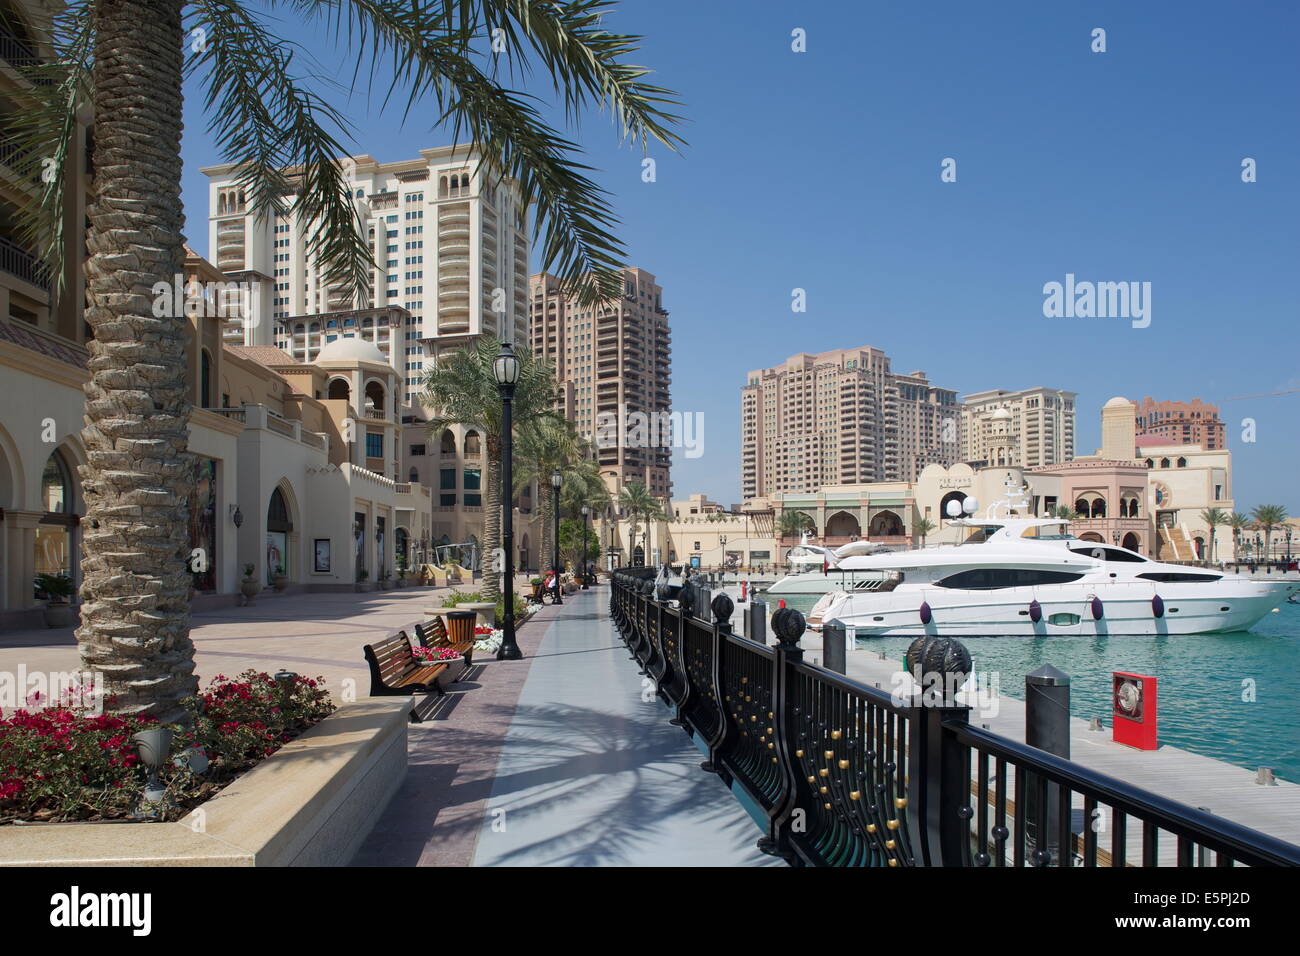 Waterside e Harbour, La Perla, Doha, Qatar, Medio Oriente Foto Stock